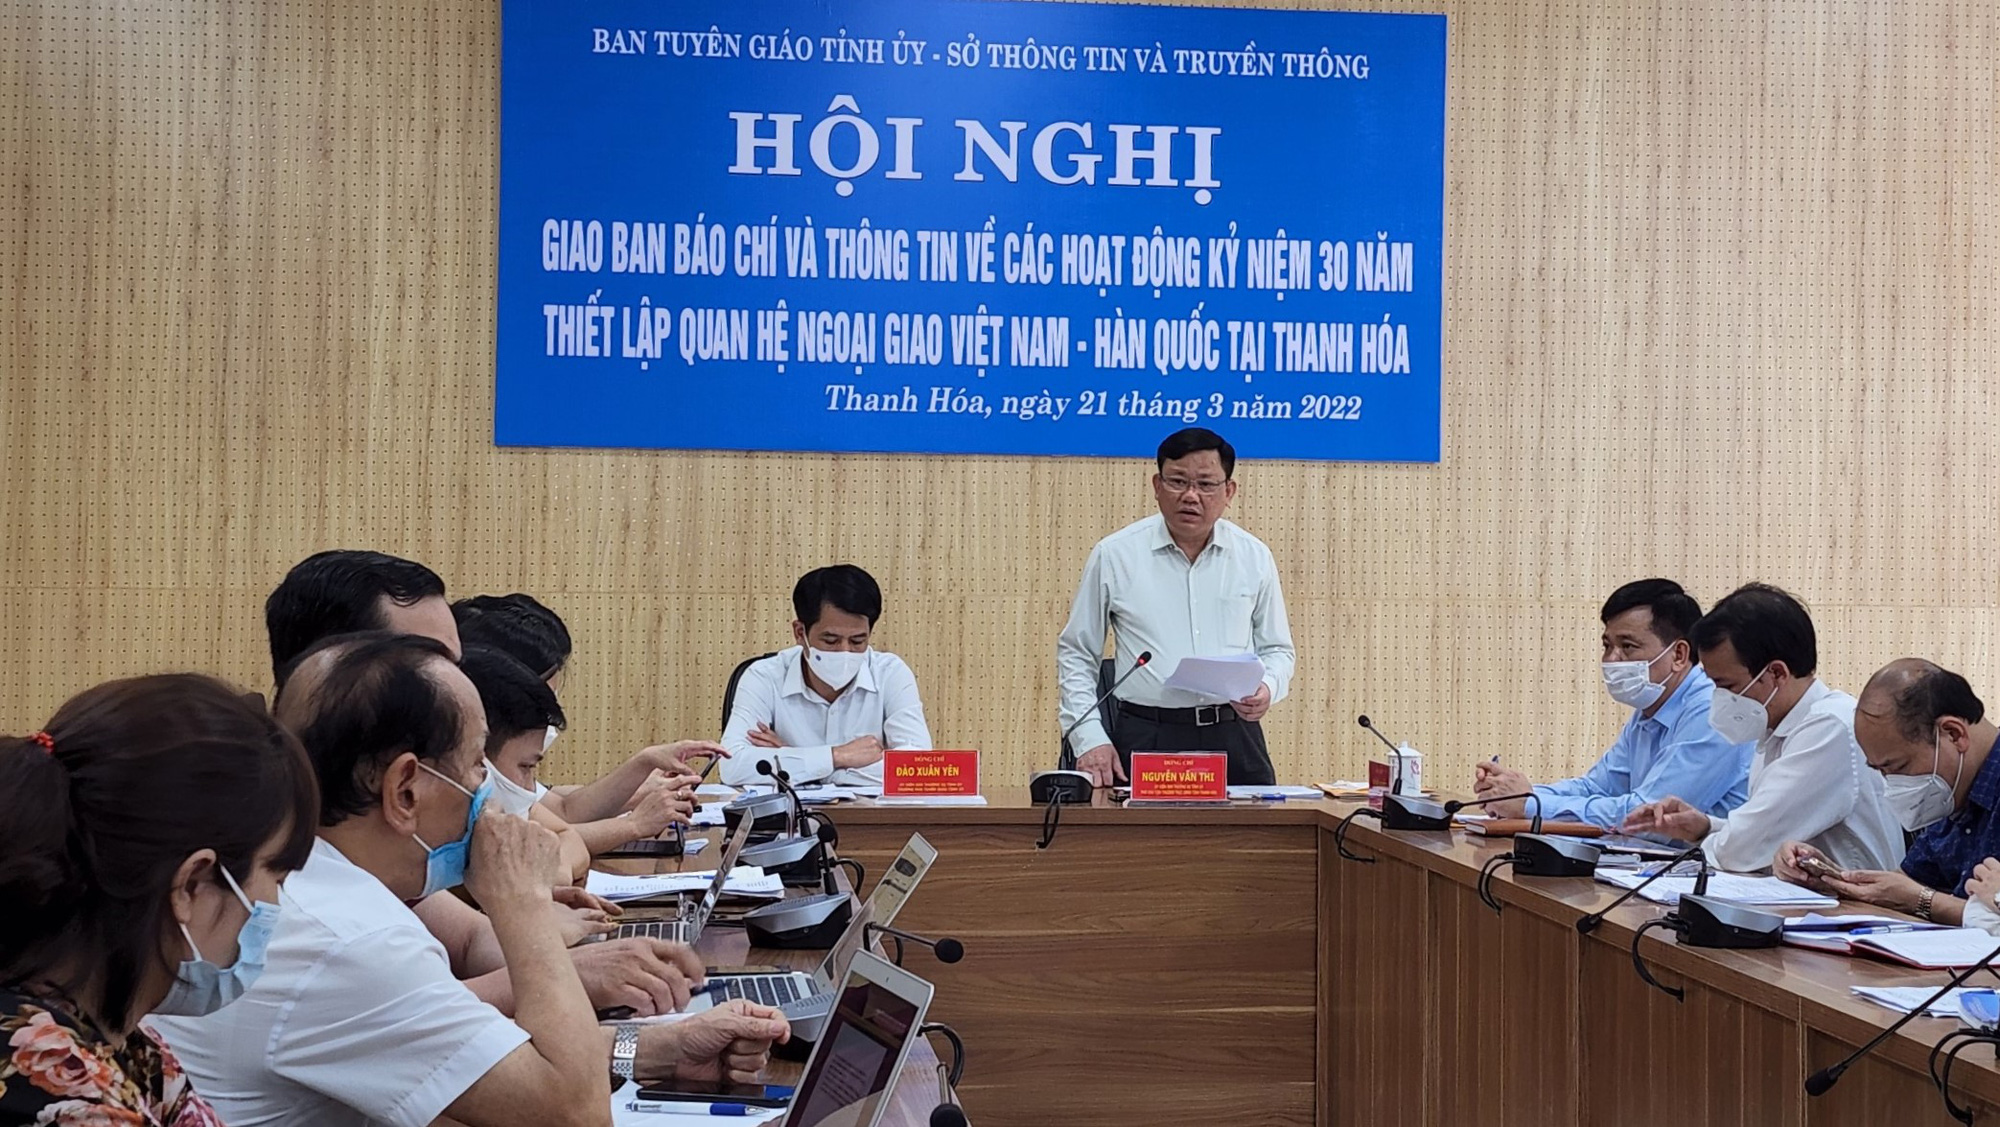 Kỷ niệm 30 năm thiết lập quan hệ ngoại giao Việt Nam - Hàn Quốc sẽ diễn ra tại Thanh Hóa - Ảnh 2.